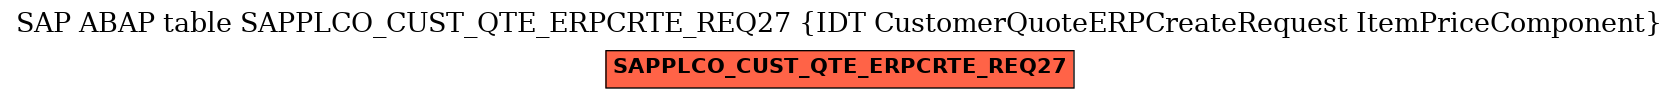 E-R Diagram for table SAPPLCO_CUST_QTE_ERPCRTE_REQ27 (IDT CustomerQuoteERPCreateRequest ItemPriceComponent)